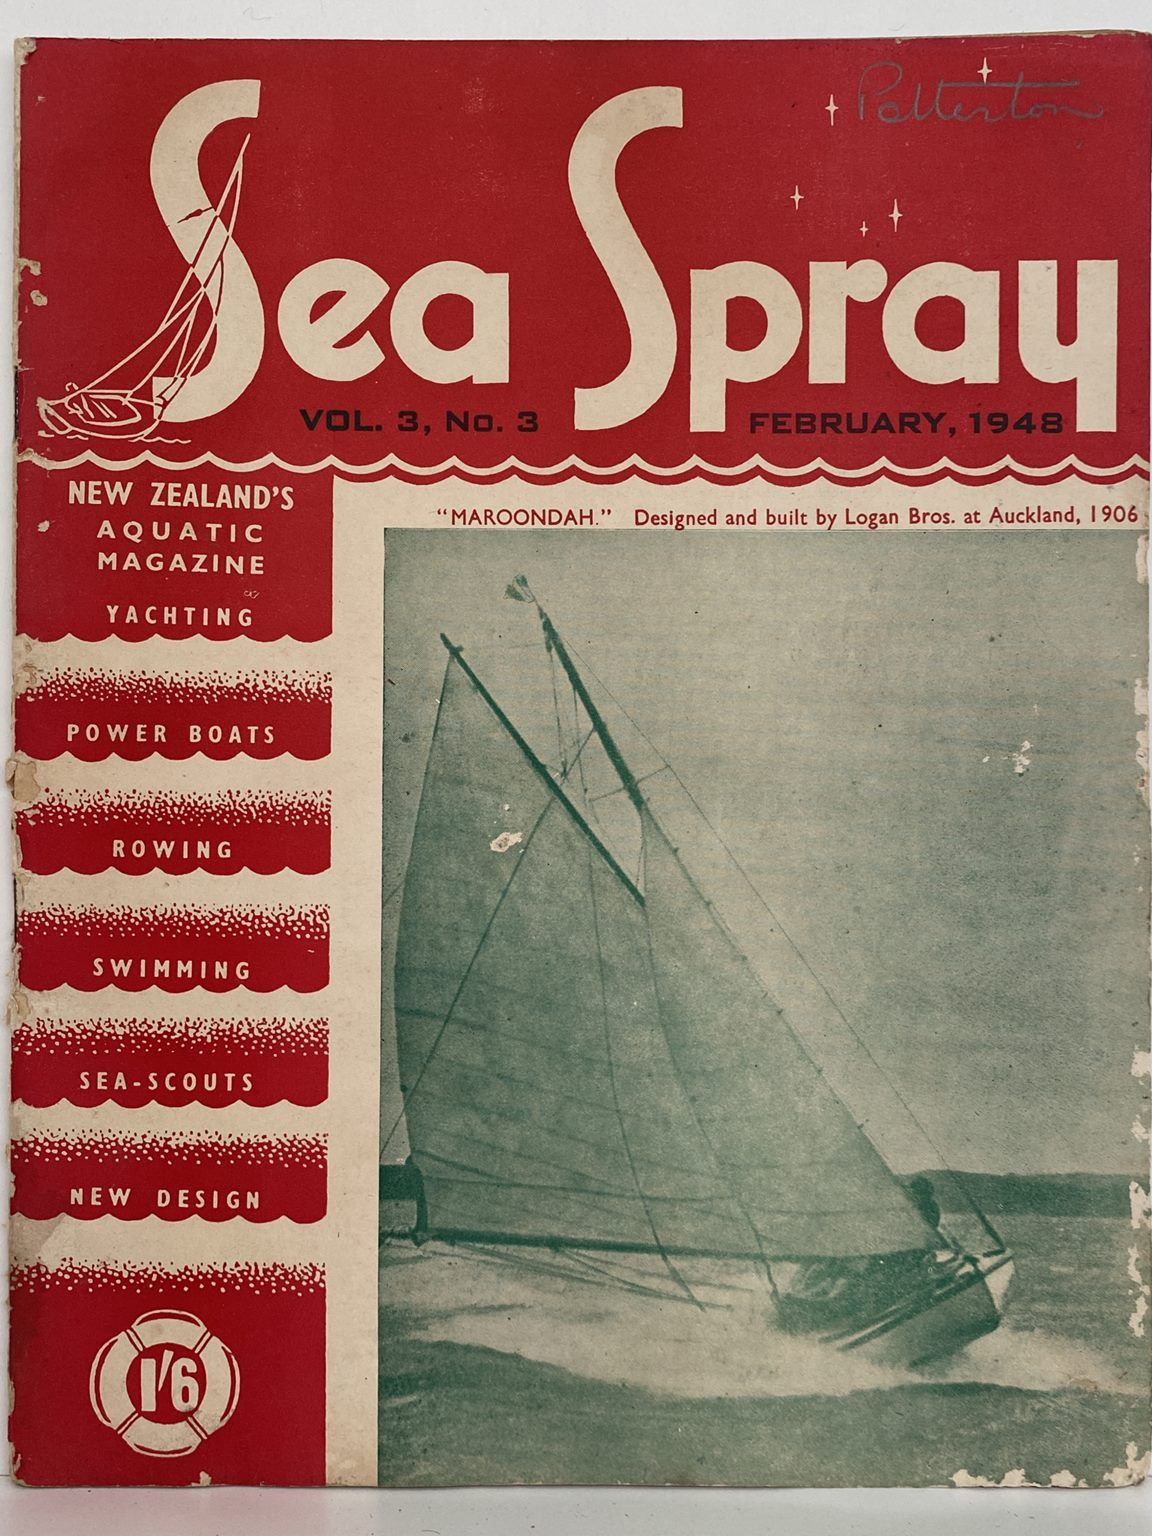 VINTAGE MAGAZINE: Sea Spray - Vol. 3, No. 3 - February 1948